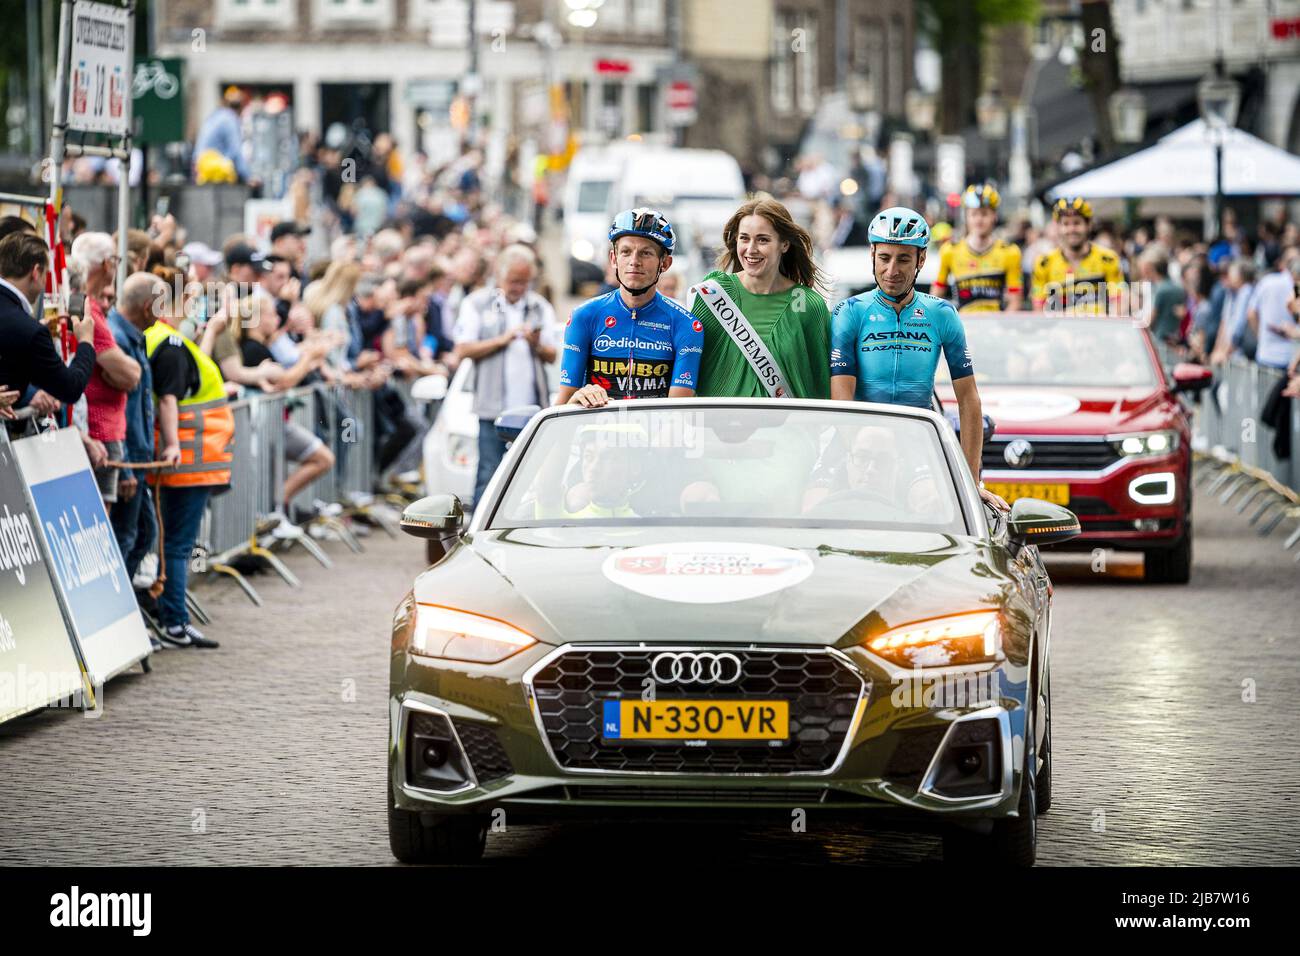 MAASTRICHT - ciclista Tom Dumoulin prima dell'inizio del RSM-Wealer Ronde, un criterio a Maastricht. Dumoulin terminerà la sua carriera dopo questa stagione. ANP ROB ANGELAAR Foto Stock